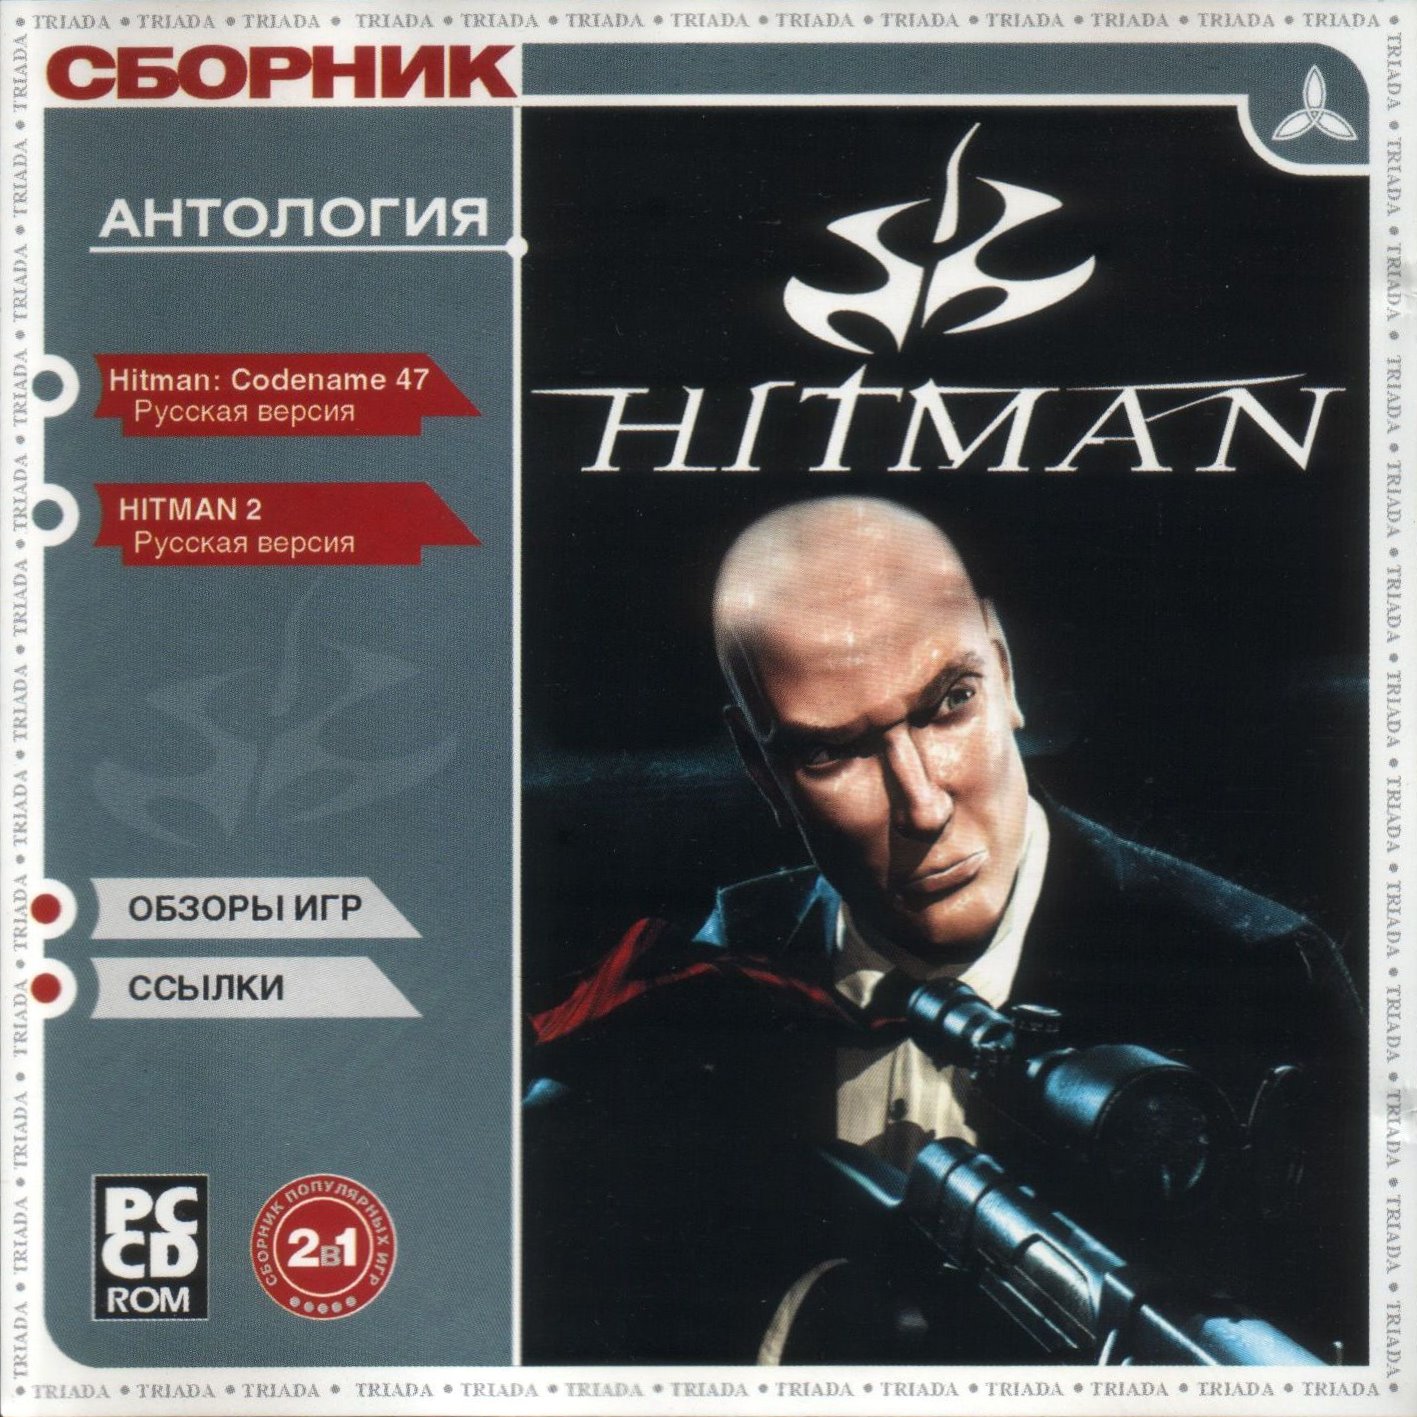 Антология человека. Hitman Triada. Hitman антология диск. Антология Hitman новый диск. Hitman DVD диск.